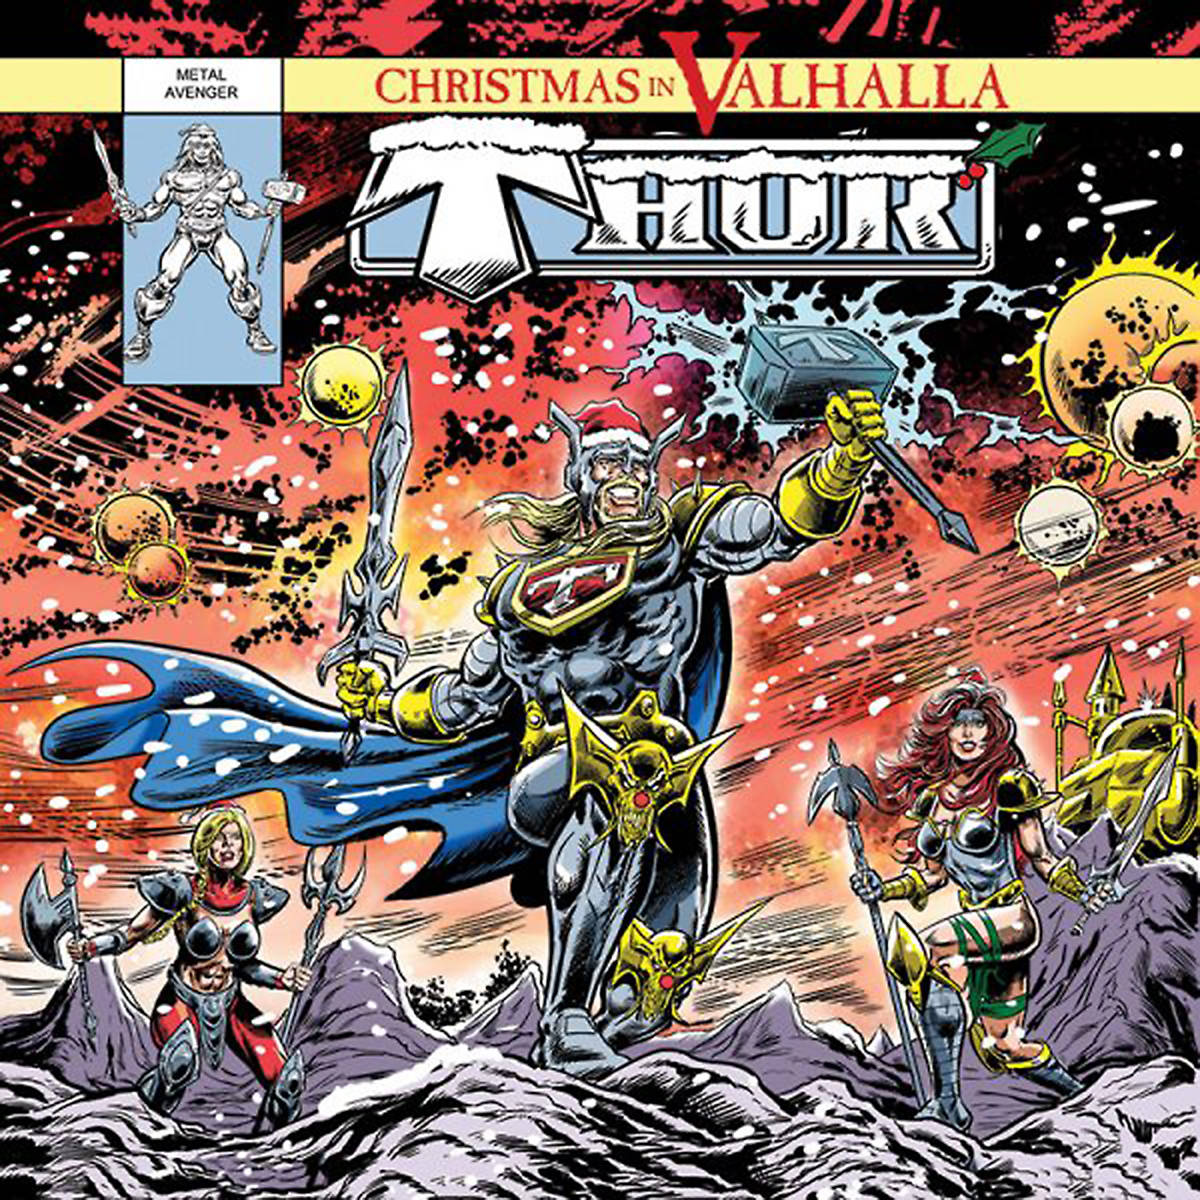 14242554_web1_1014-Thor_XmasInValhala_Gorgeous-cover-illustration-by-Marvel-UK-comic-illustrator-Simon-Williams